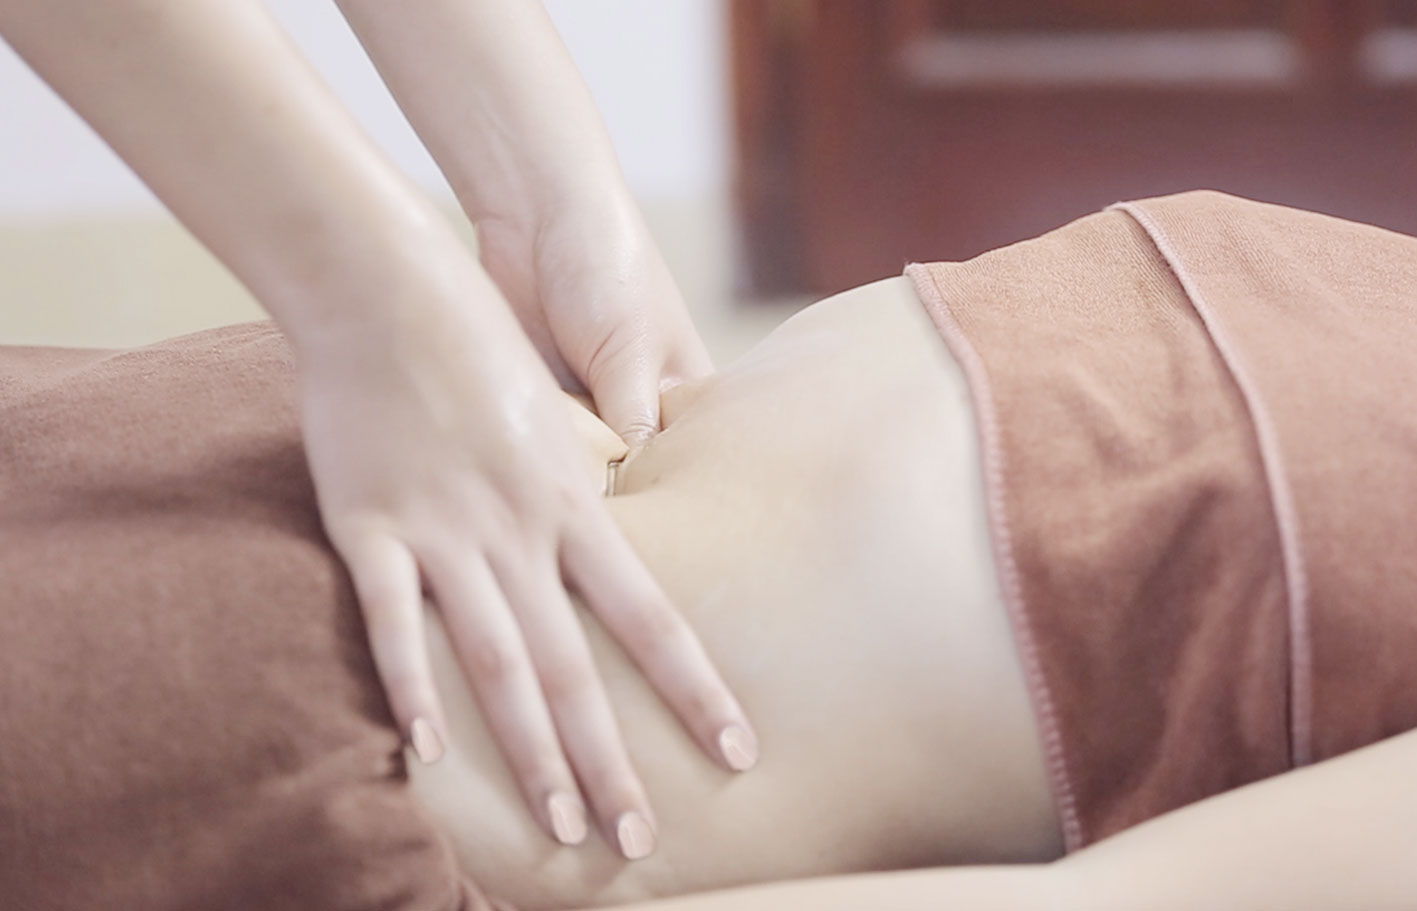 Massage bụng không chỉ giúp giảm mỡ bụng sau sinh còn giúp thư giãn